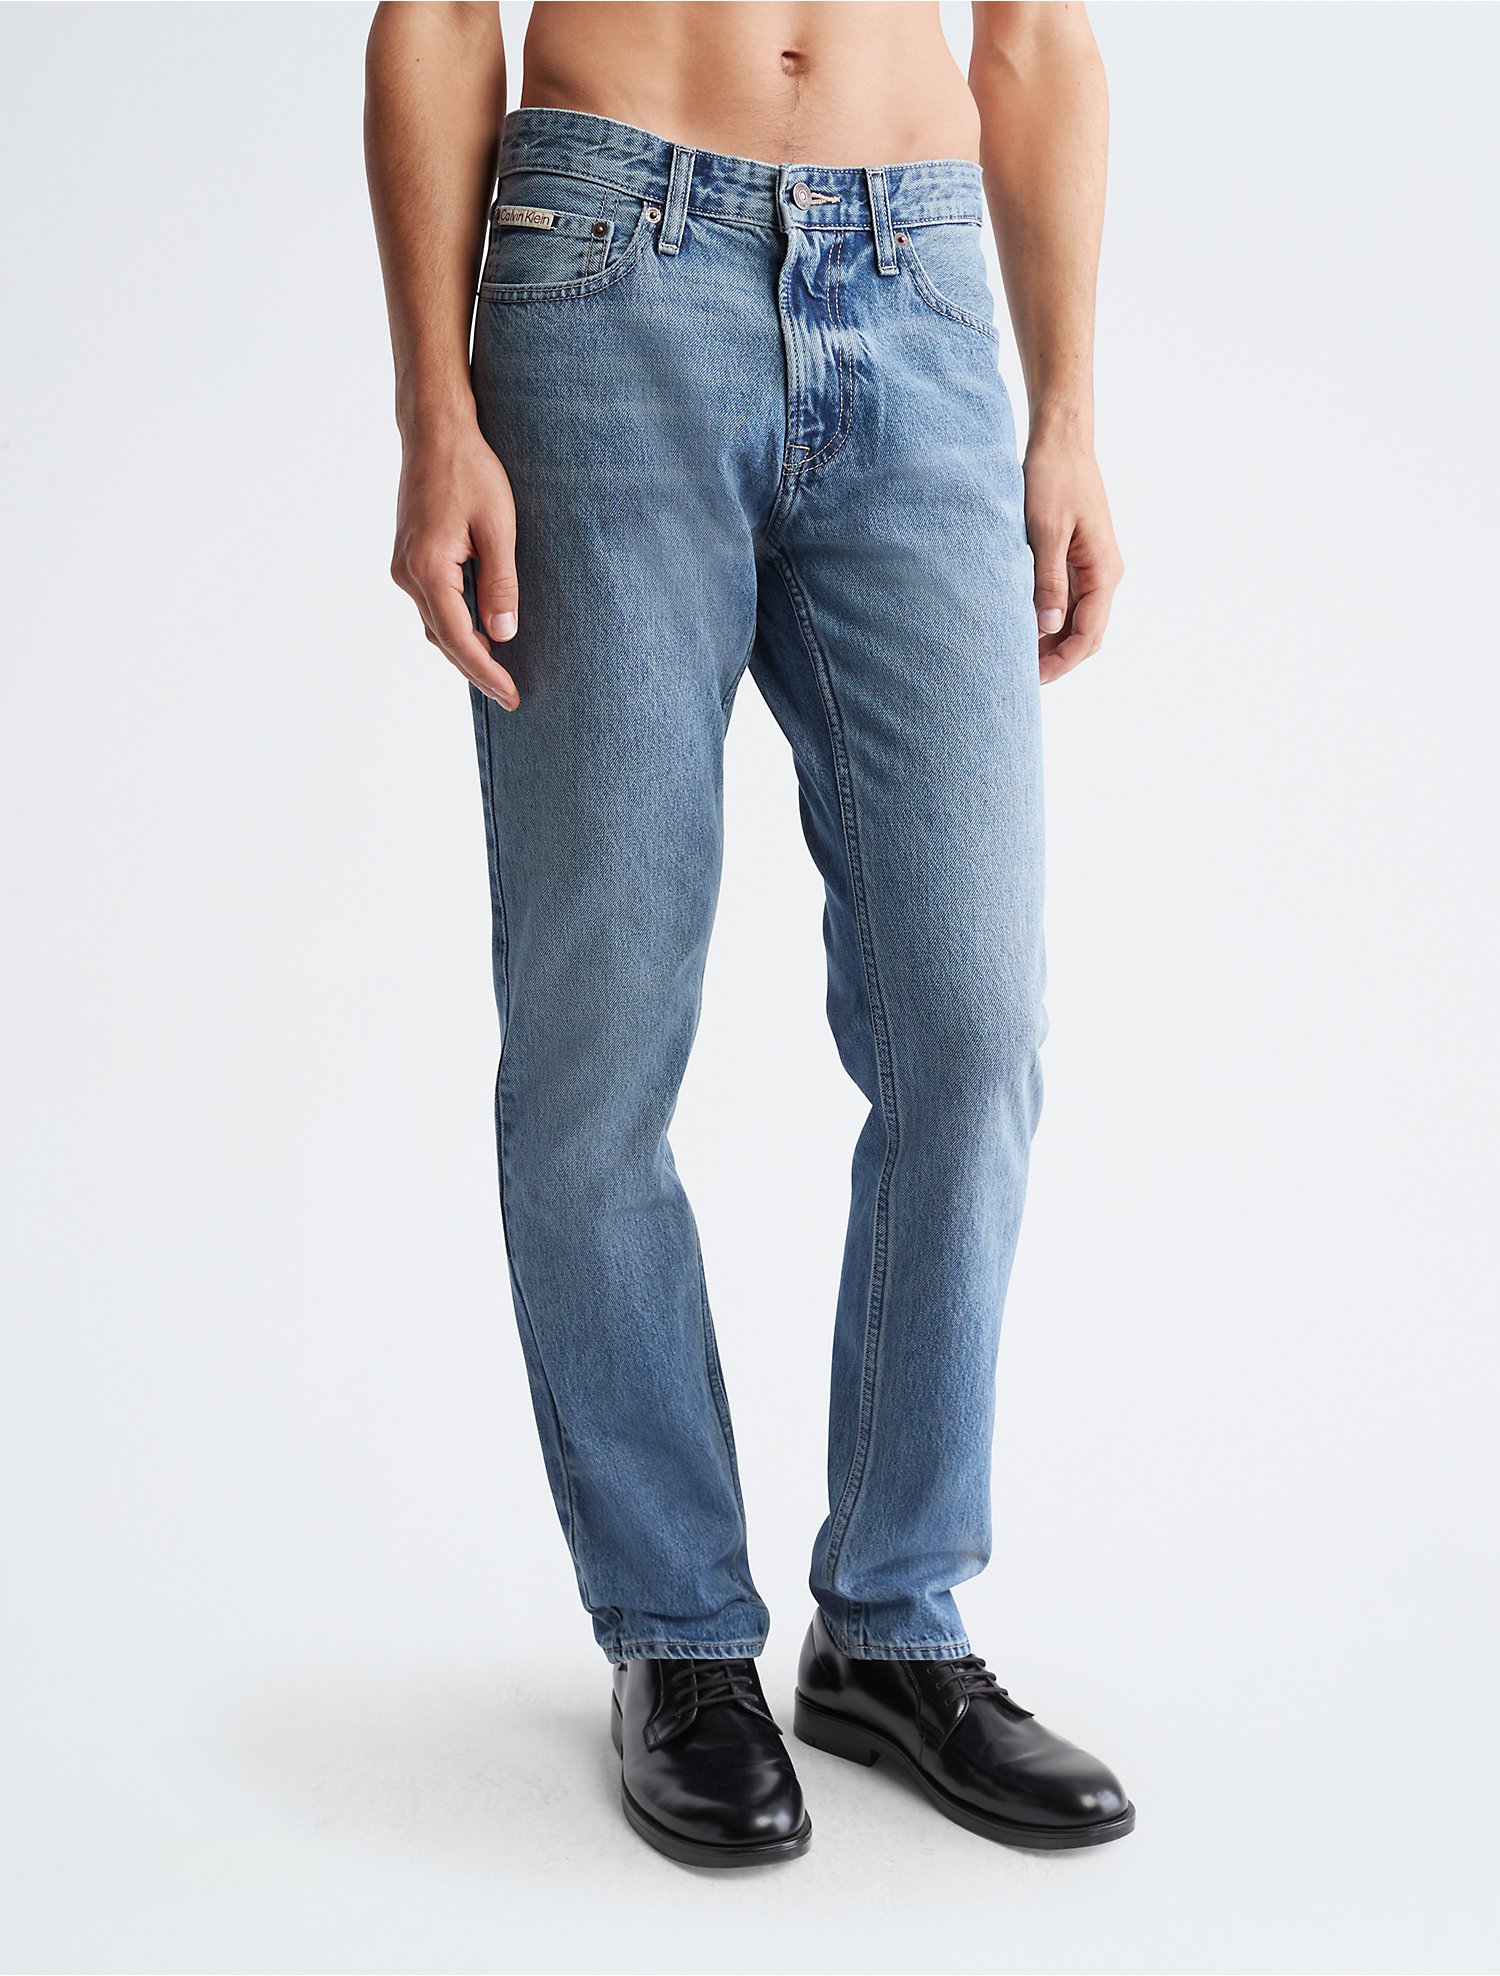 sanger fodspor plantageejer Slim Fit Jeans | Calvin Klein